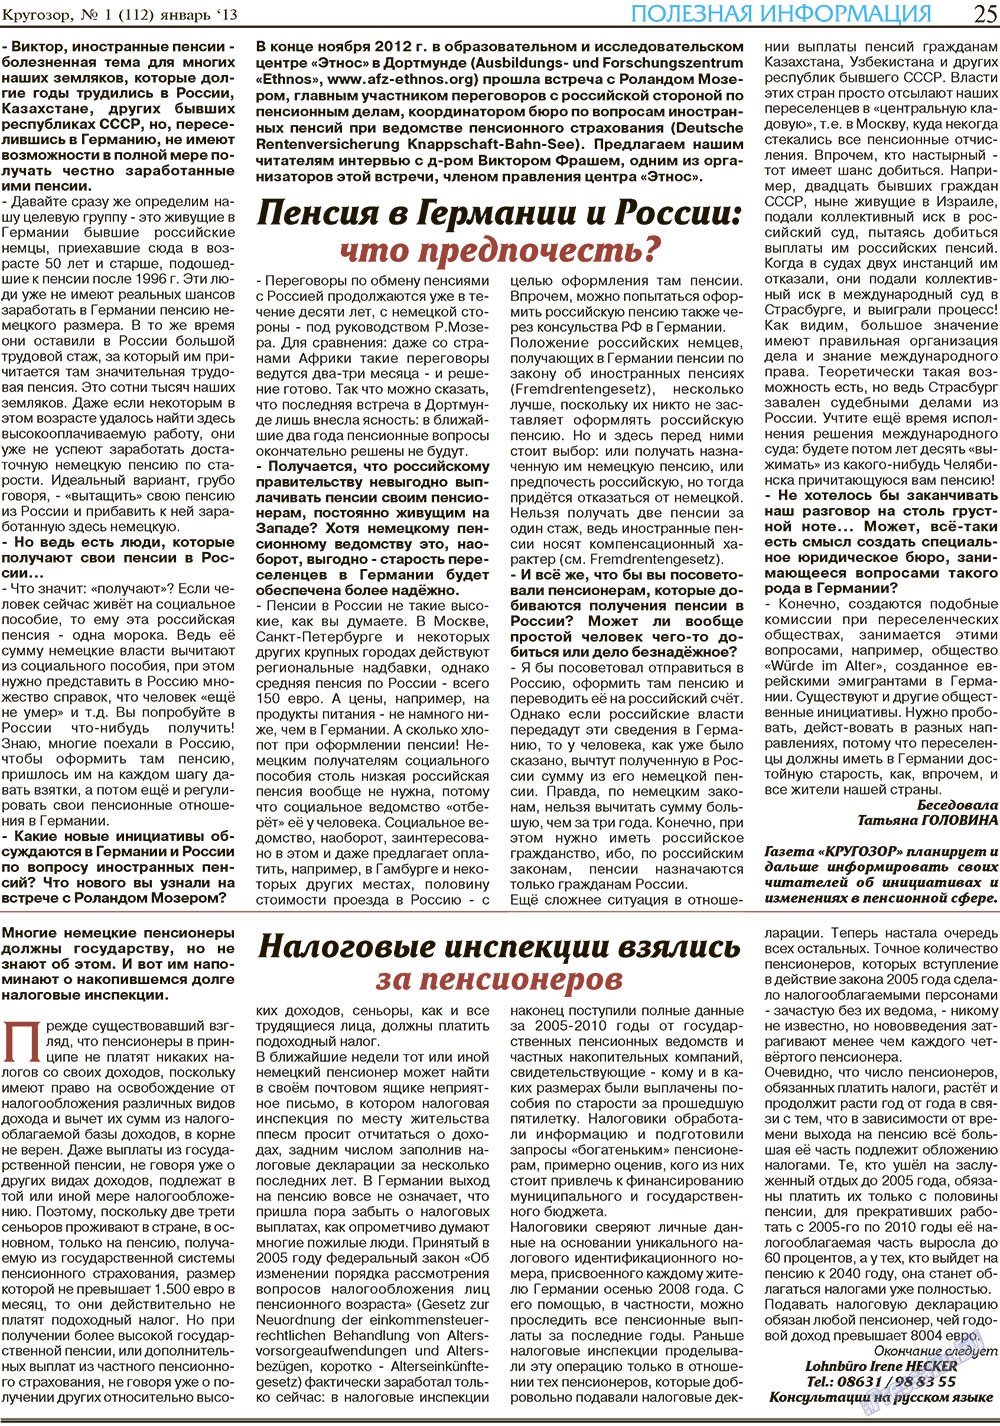 Кругозор (газета). 2013 год, номер 1, стр. 25